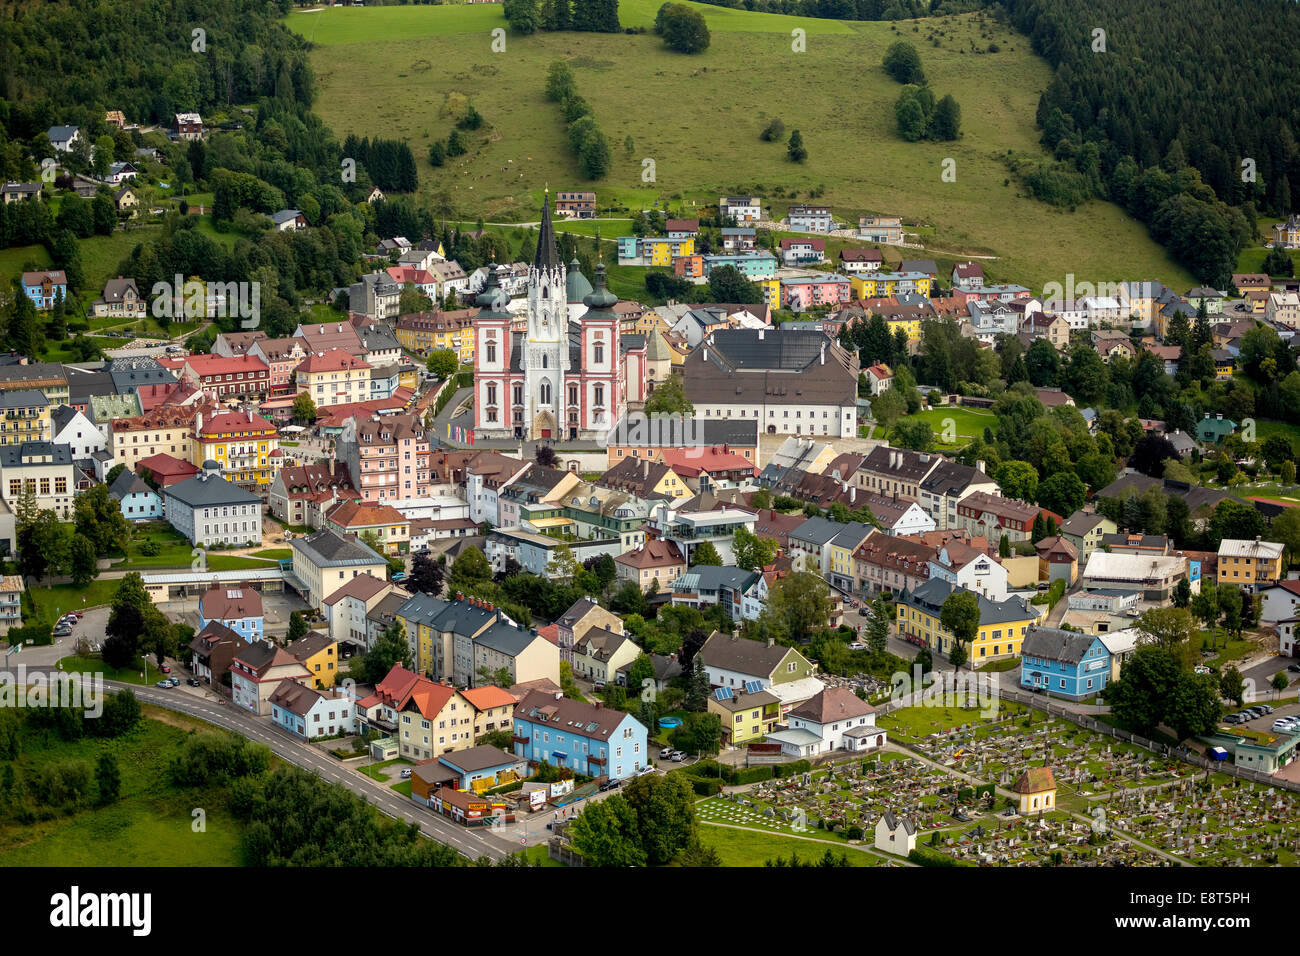 Vue aérienne de l'église de pèlerinage, la Basilique de Mariazell, Mariazell, Styrie, Autriche Banque D'Images